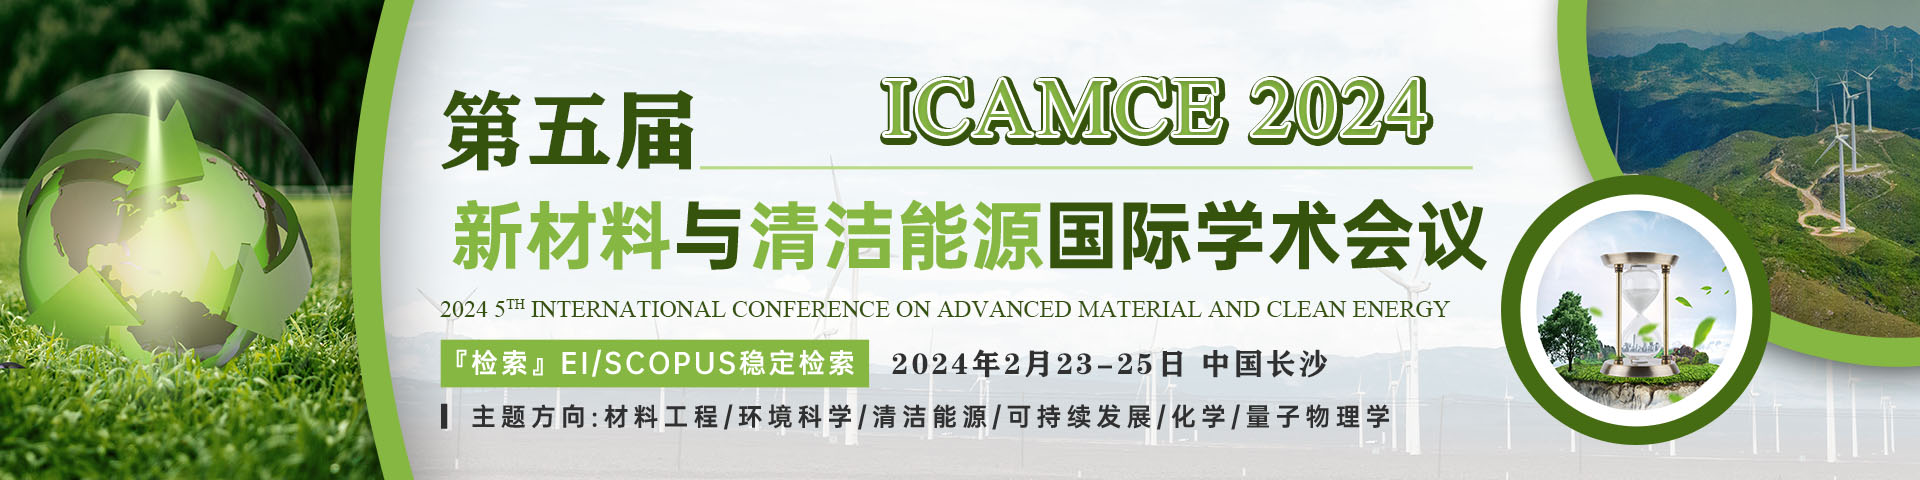 2月ICAMCE2023会议艾思banner-20221009.jpg